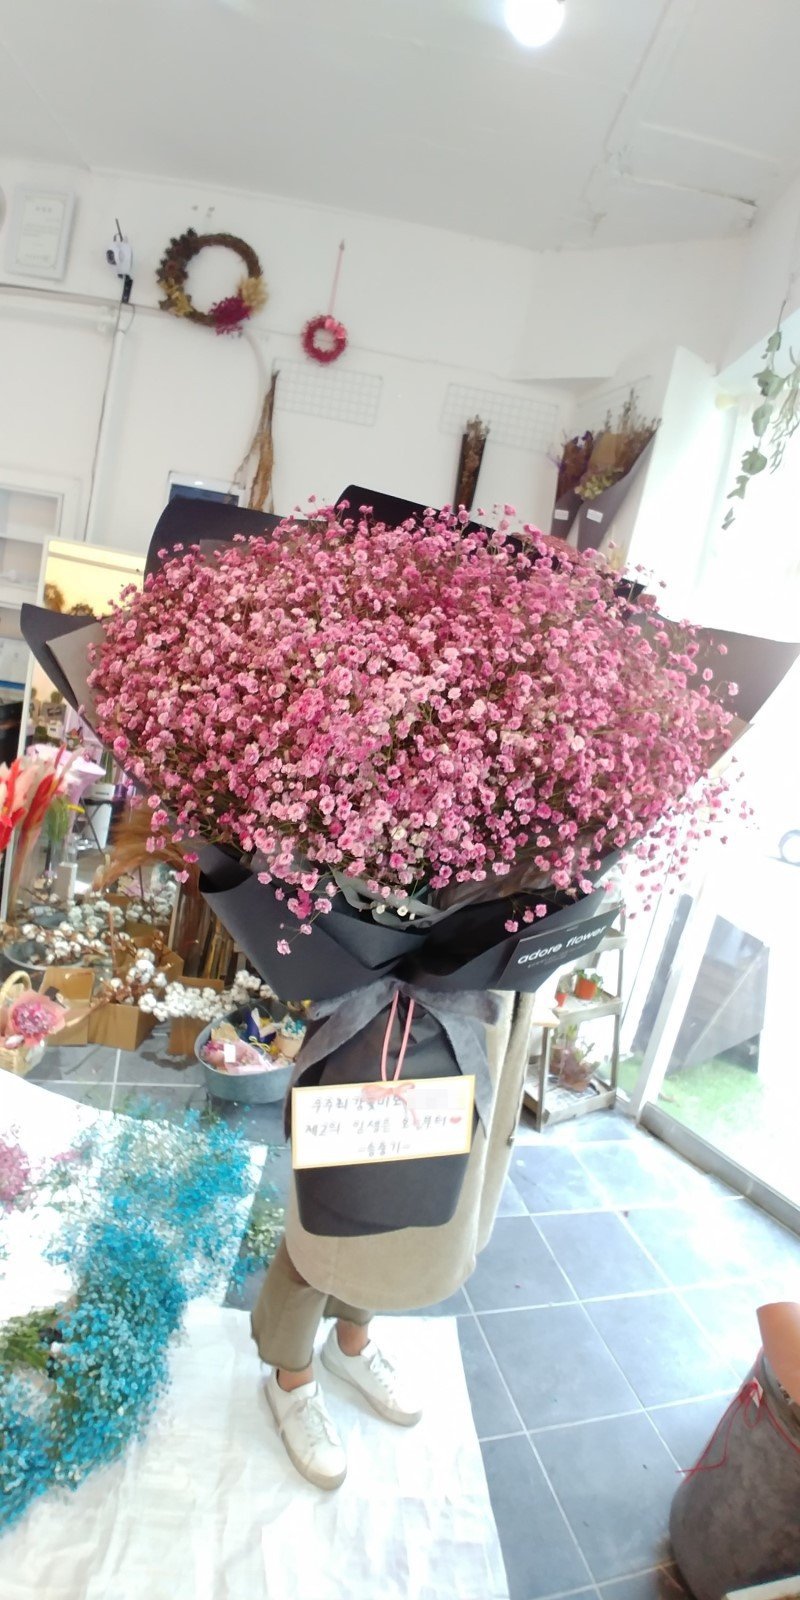 Đúng dịp kỷ niệm 100 ngày cưới, Song Joong Ki khiến dân tình ngưỡng mộ khi đặt hẳn một bó hoa hồng phấn siêu lớn để tặng bà xã.    